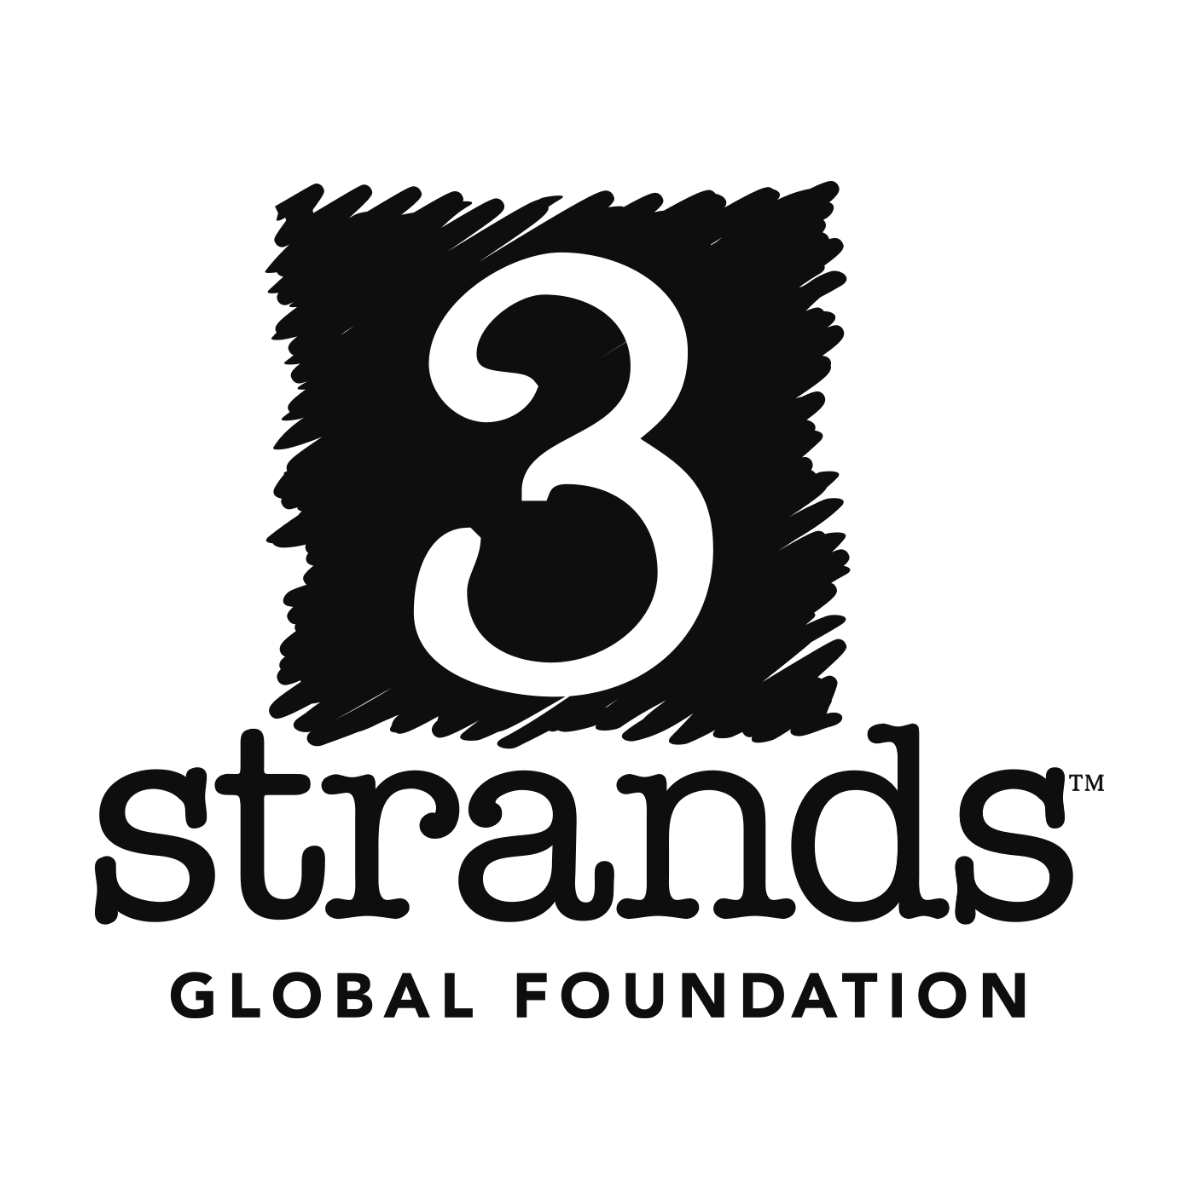 3 Strands Global Foundation